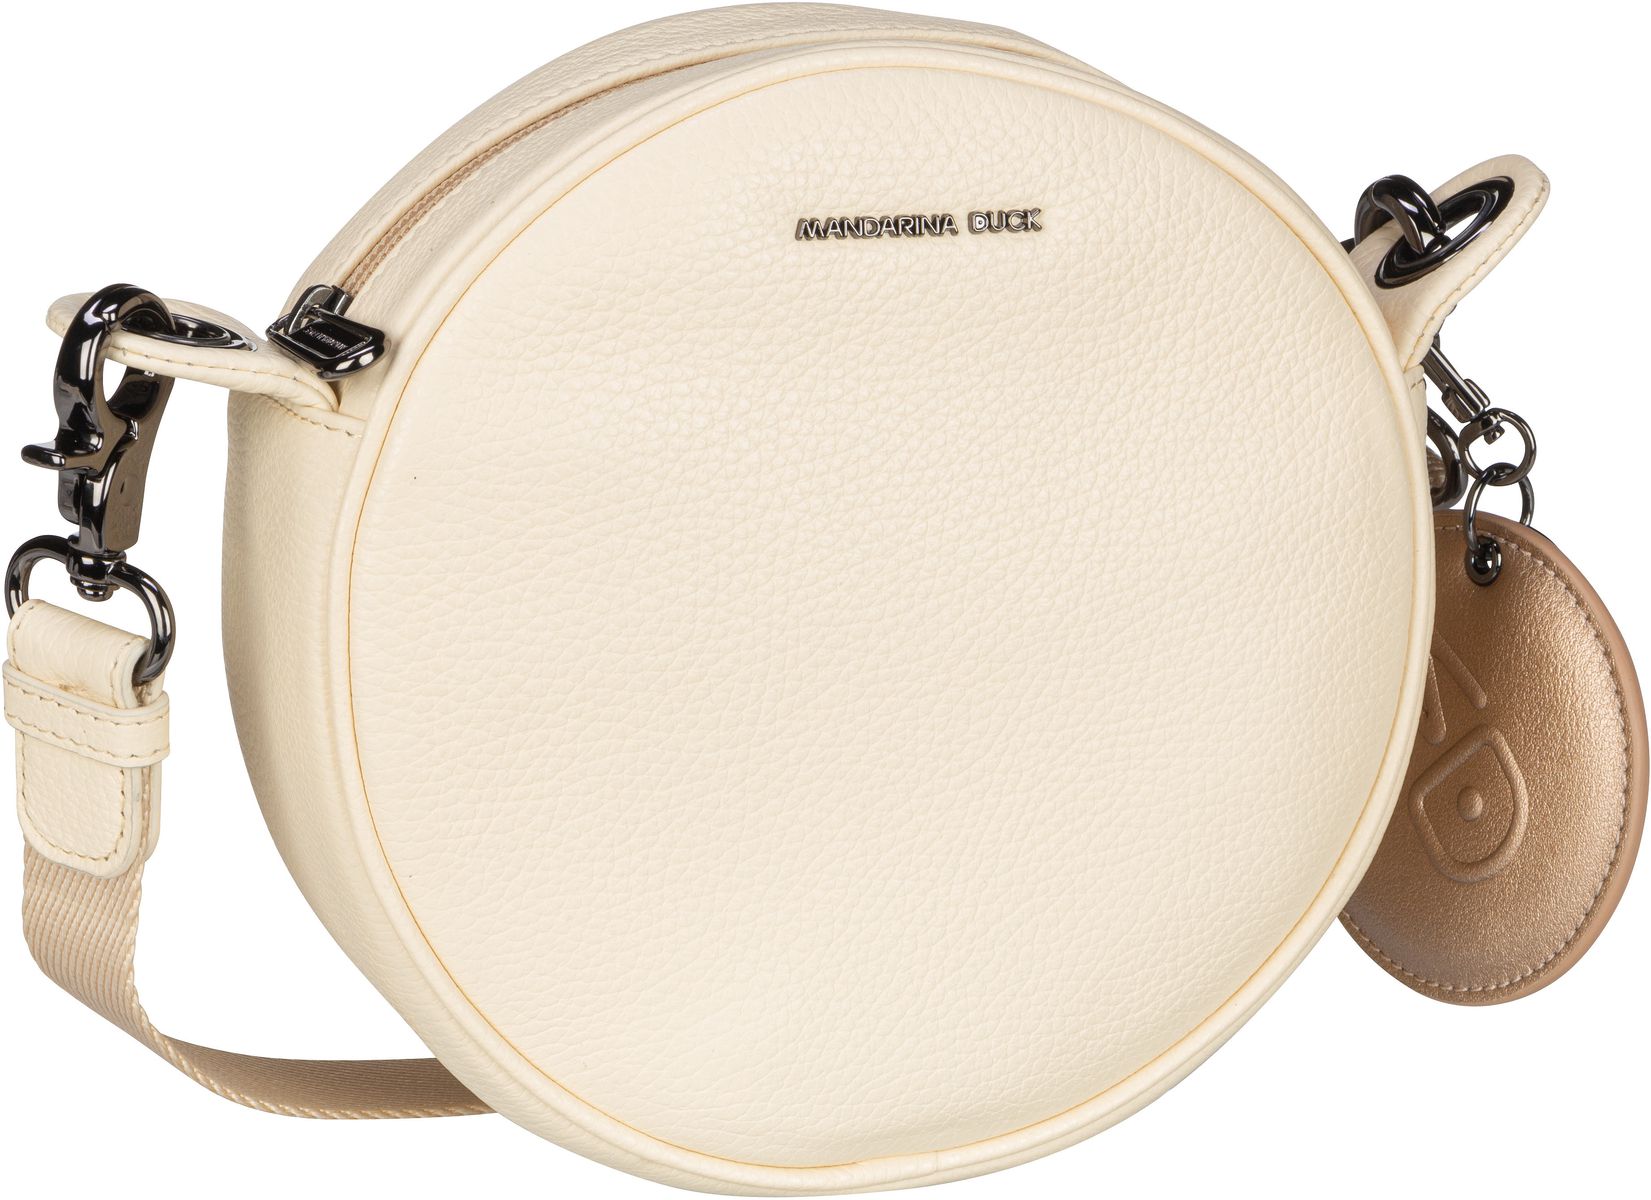 Mandarina Duck Mellow Leather Circular Bag FZT43 - Macadamia